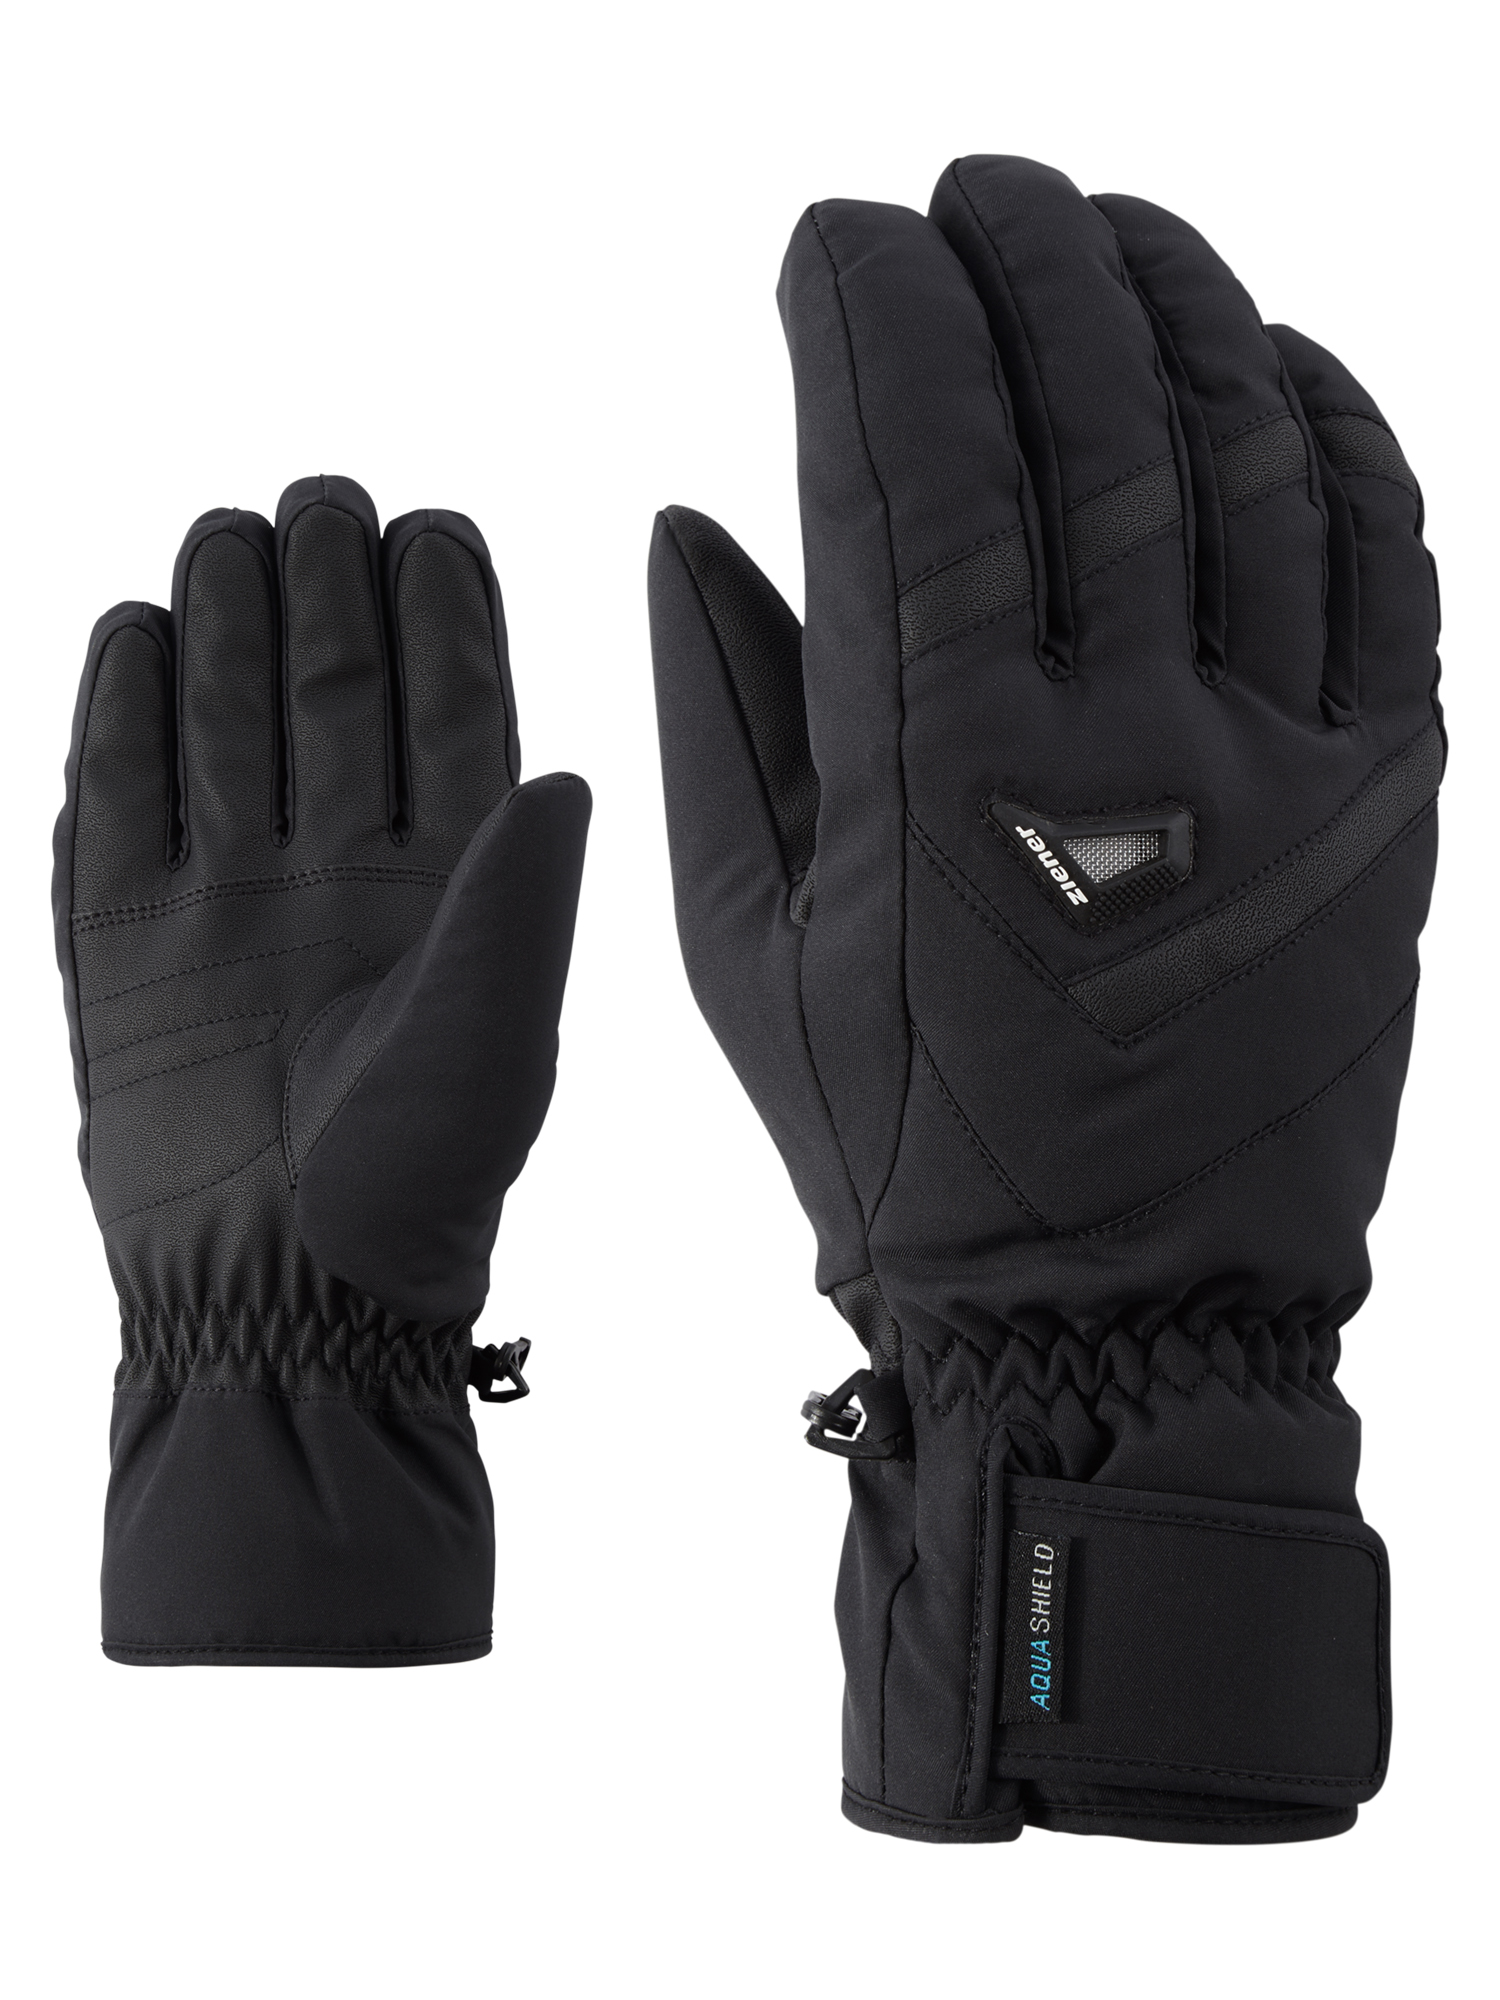 Ziener M Gary AsR Glove 12 Black | 7 |